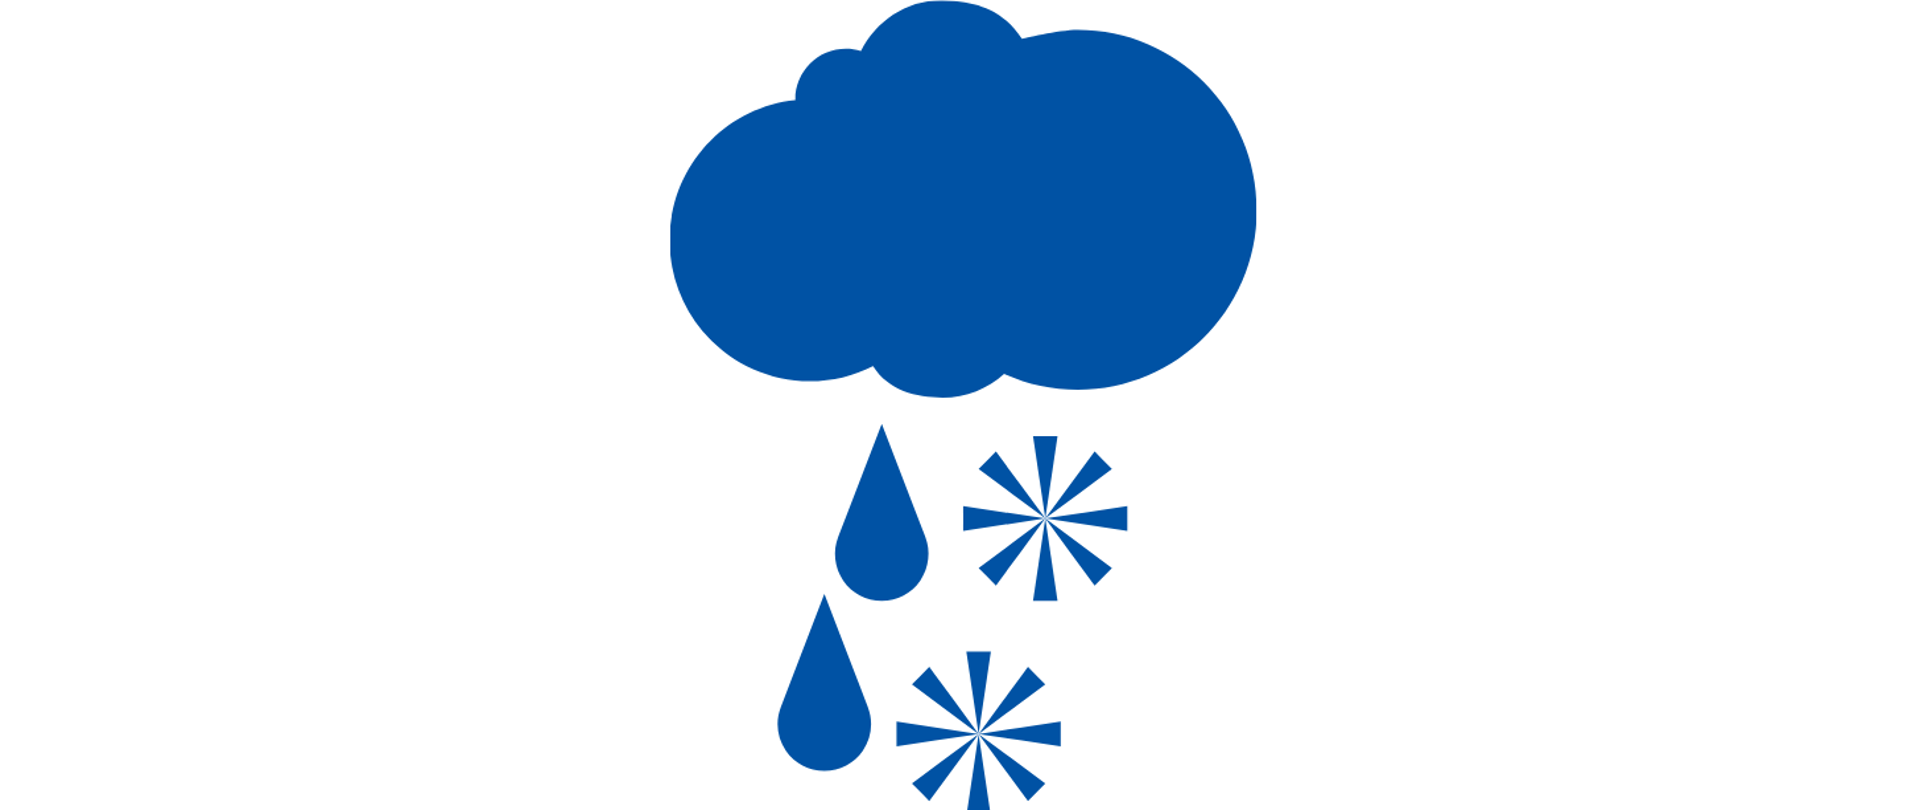 Niebieska ikona symbolizująca chmurę z deszczem oraz płatkami śniegu